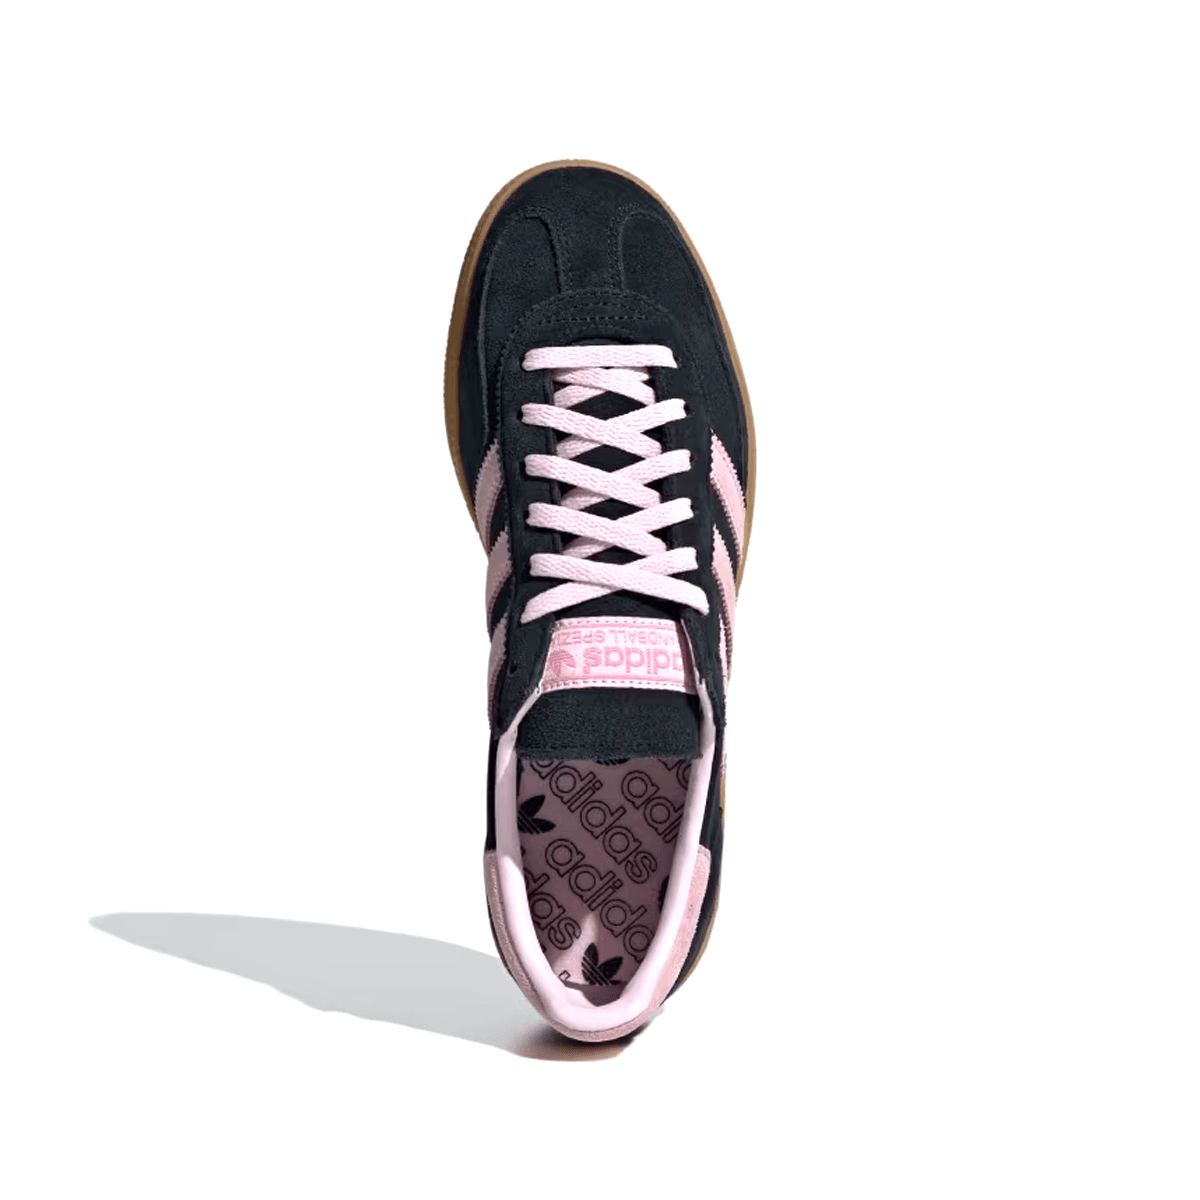 Adidas Handebol Spezial Preto/Rosa "Core Black Clear Pink" Adidas Handebol Spezial Blizz Sneakers 